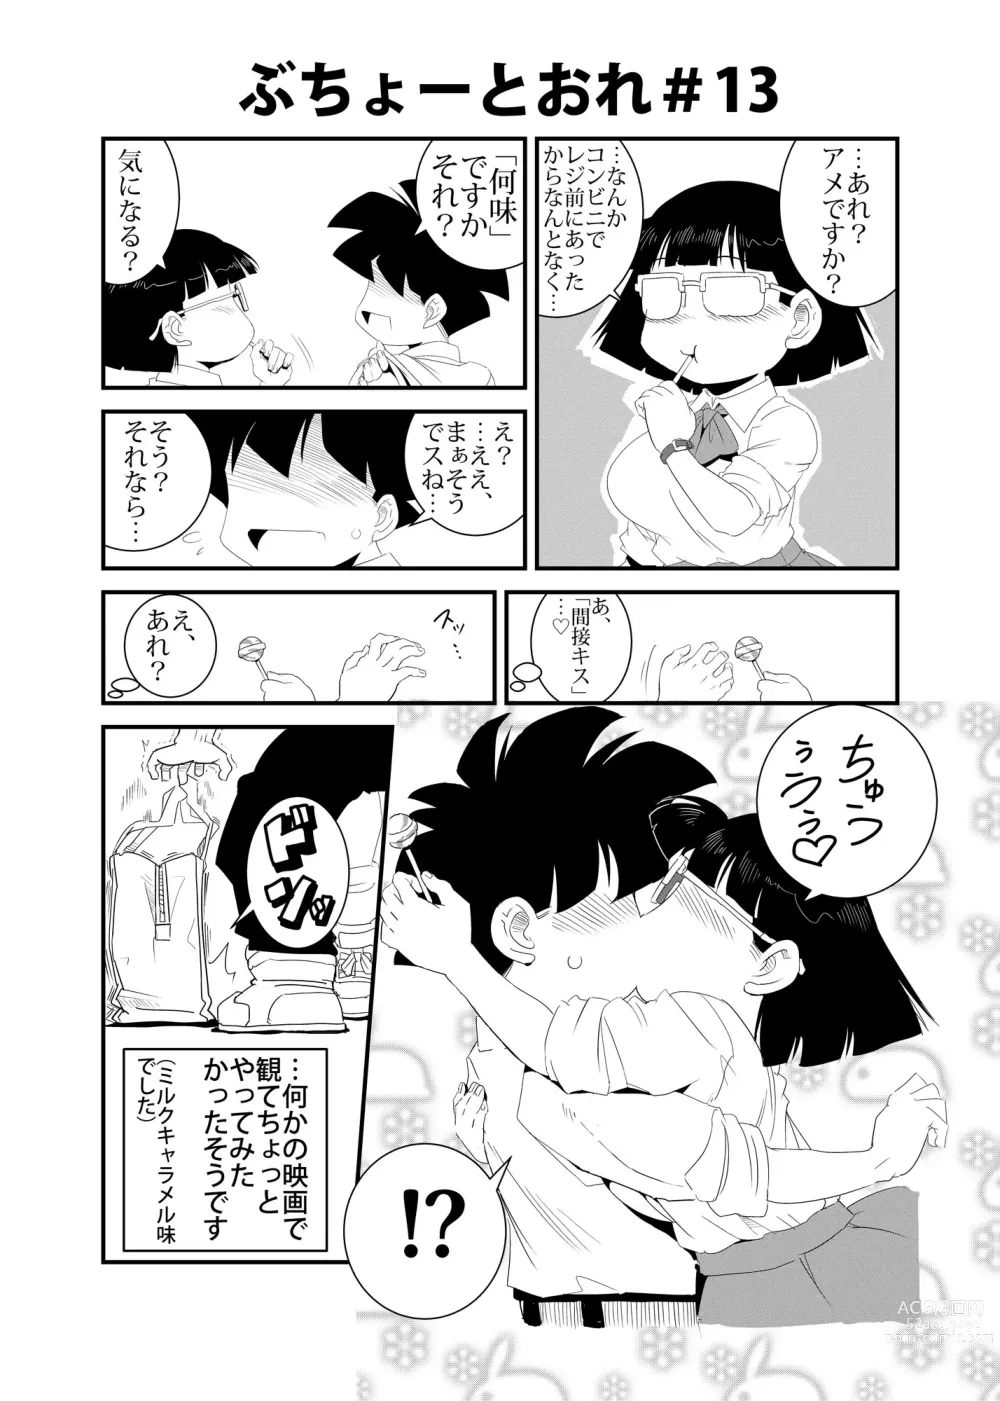 Page 13 of doujinshi Buchou to Ore